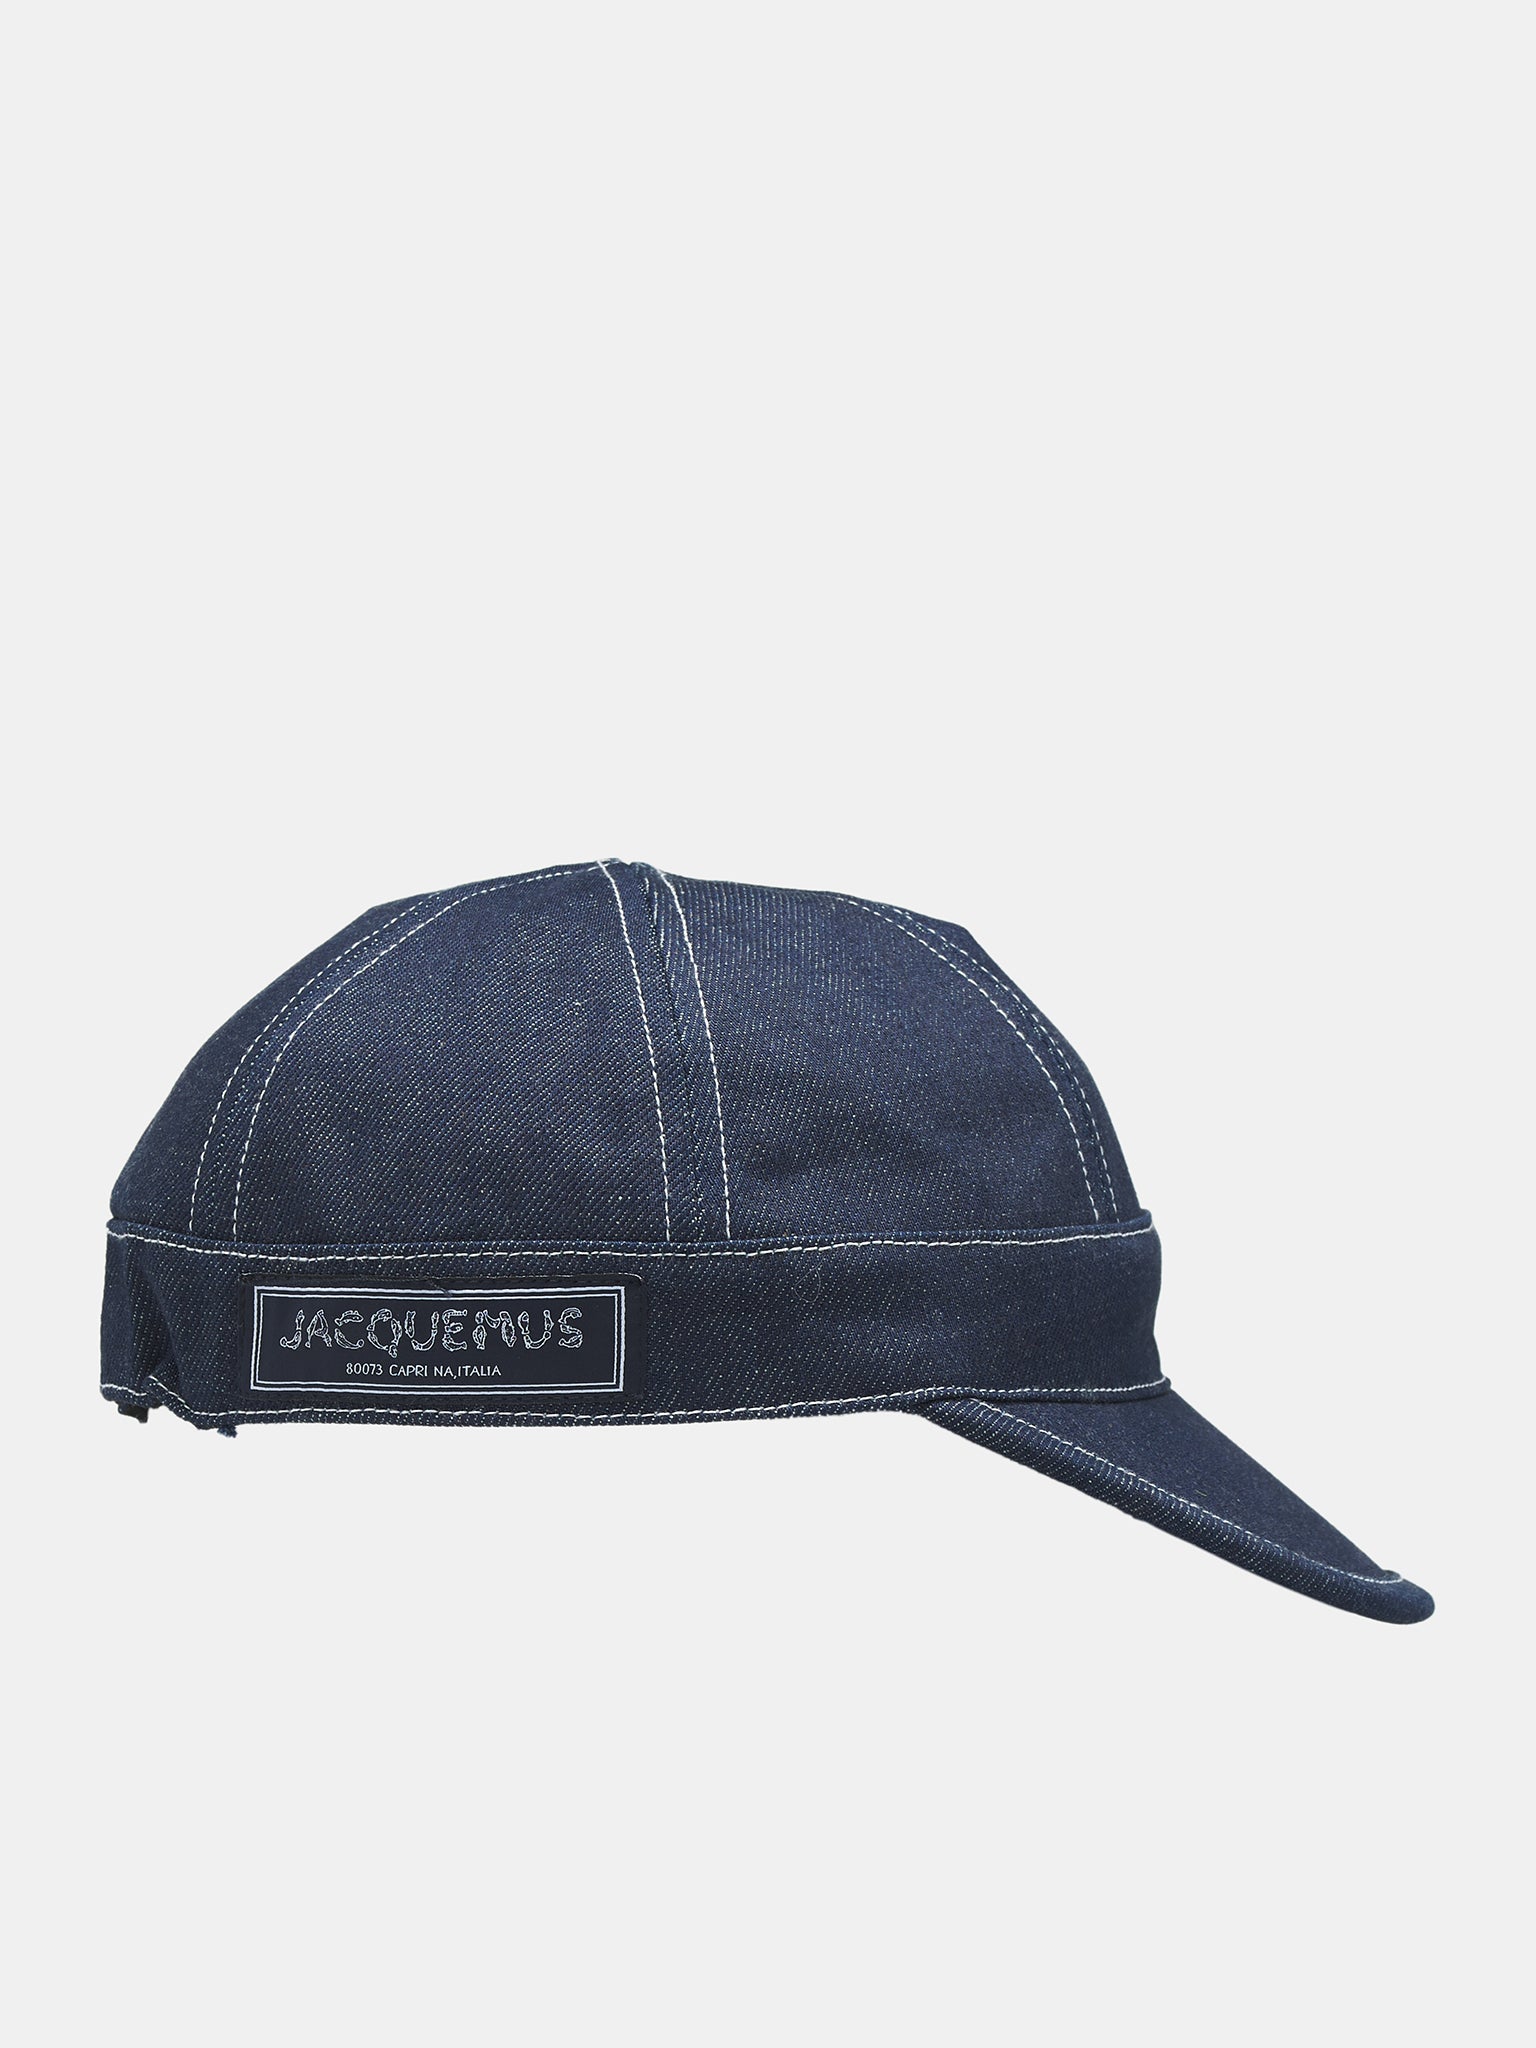 JACQUEMUS hat | H. Lorenzo - side